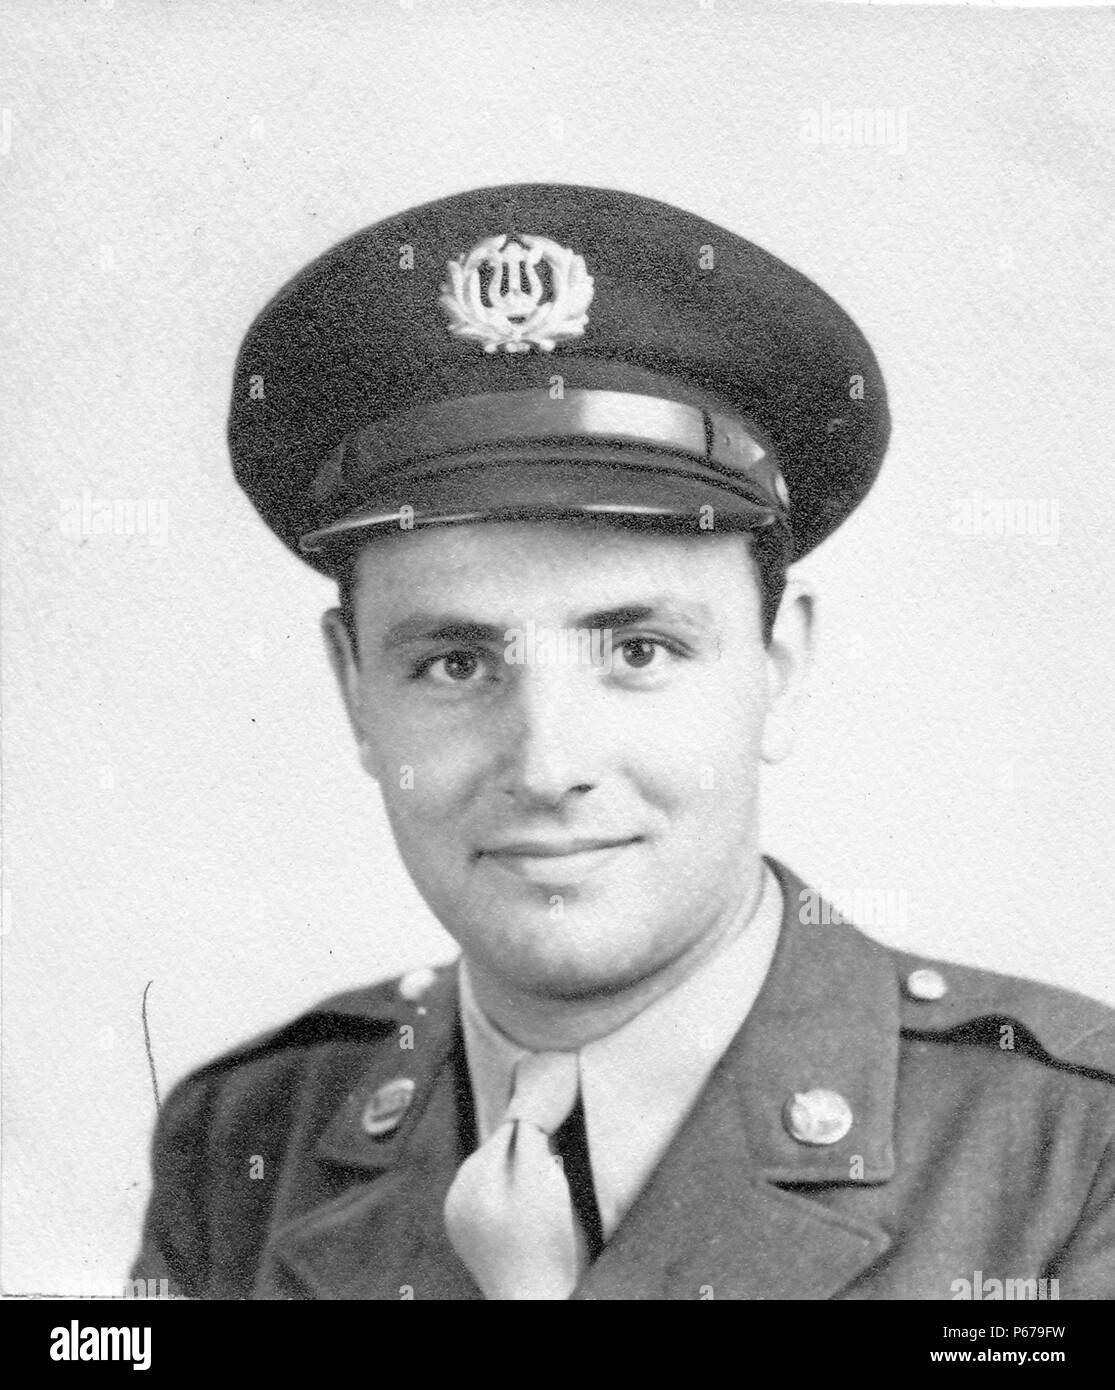 Photographie noir et blanc, montrant un portrait officiel d'un homme soldat, face caméra, avec un très léger sourire, portant un uniforme de l'Armée de l'air avec une broche sur le revers, et le bouchon avec une bande armée américaine insignia, probablement photographié dans l'Ohio pendant la Seconde Guerre mondiale, 1945. () Banque D'Images